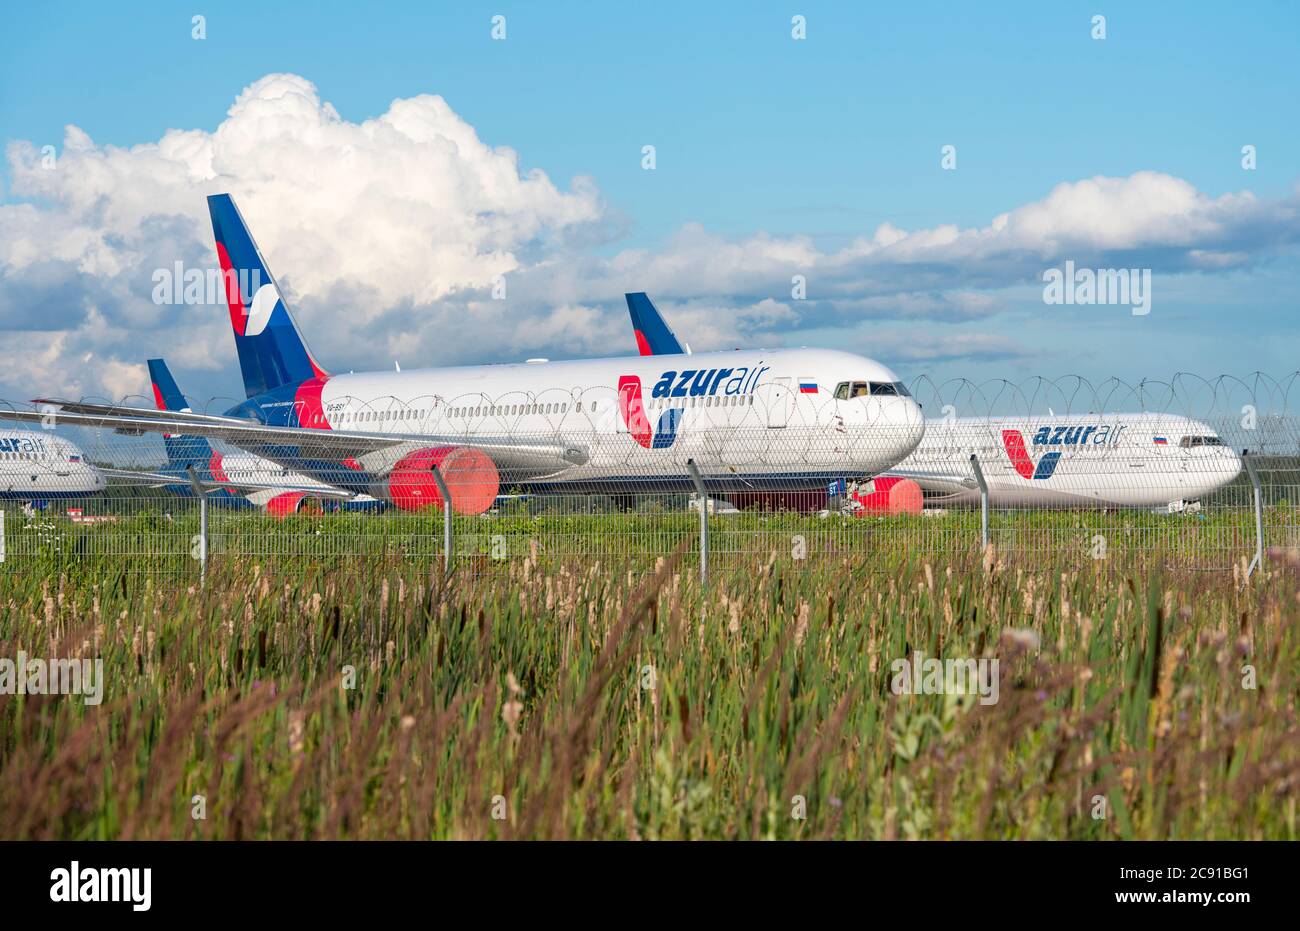 MOSCA - LUGLIO 24: Aerei della compagnia aerea AzurAir all'aeroporto di Vnuovo a Mosca il 24 luglio. 2020 in Russia Foto Stock